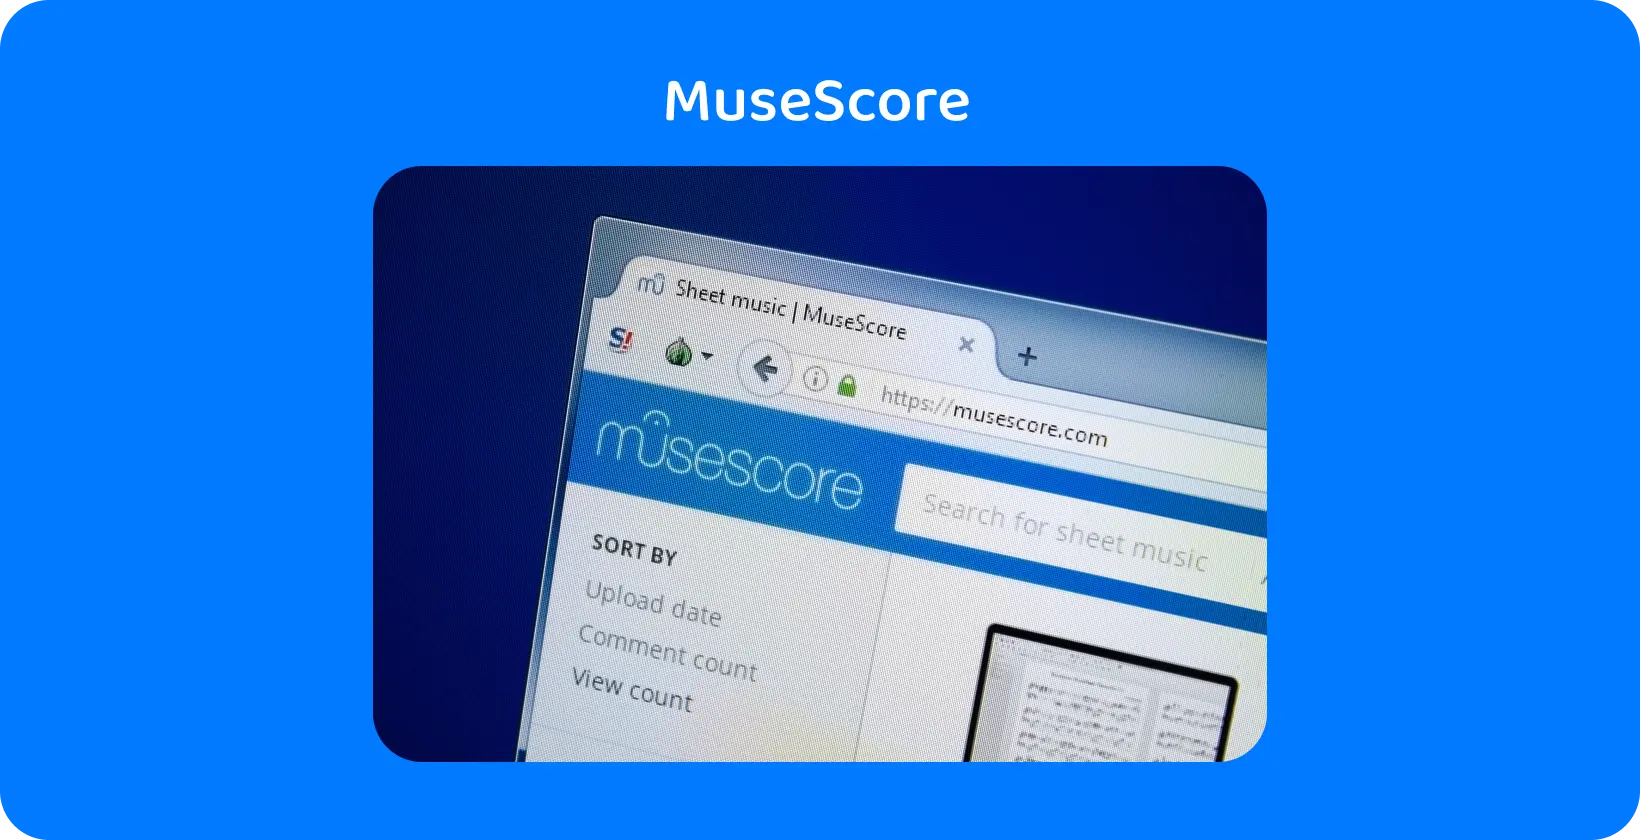 U krupni MuseScore, isticanje pretrage muzike na listu, ključna alatka za vođenje audio transkripcije.